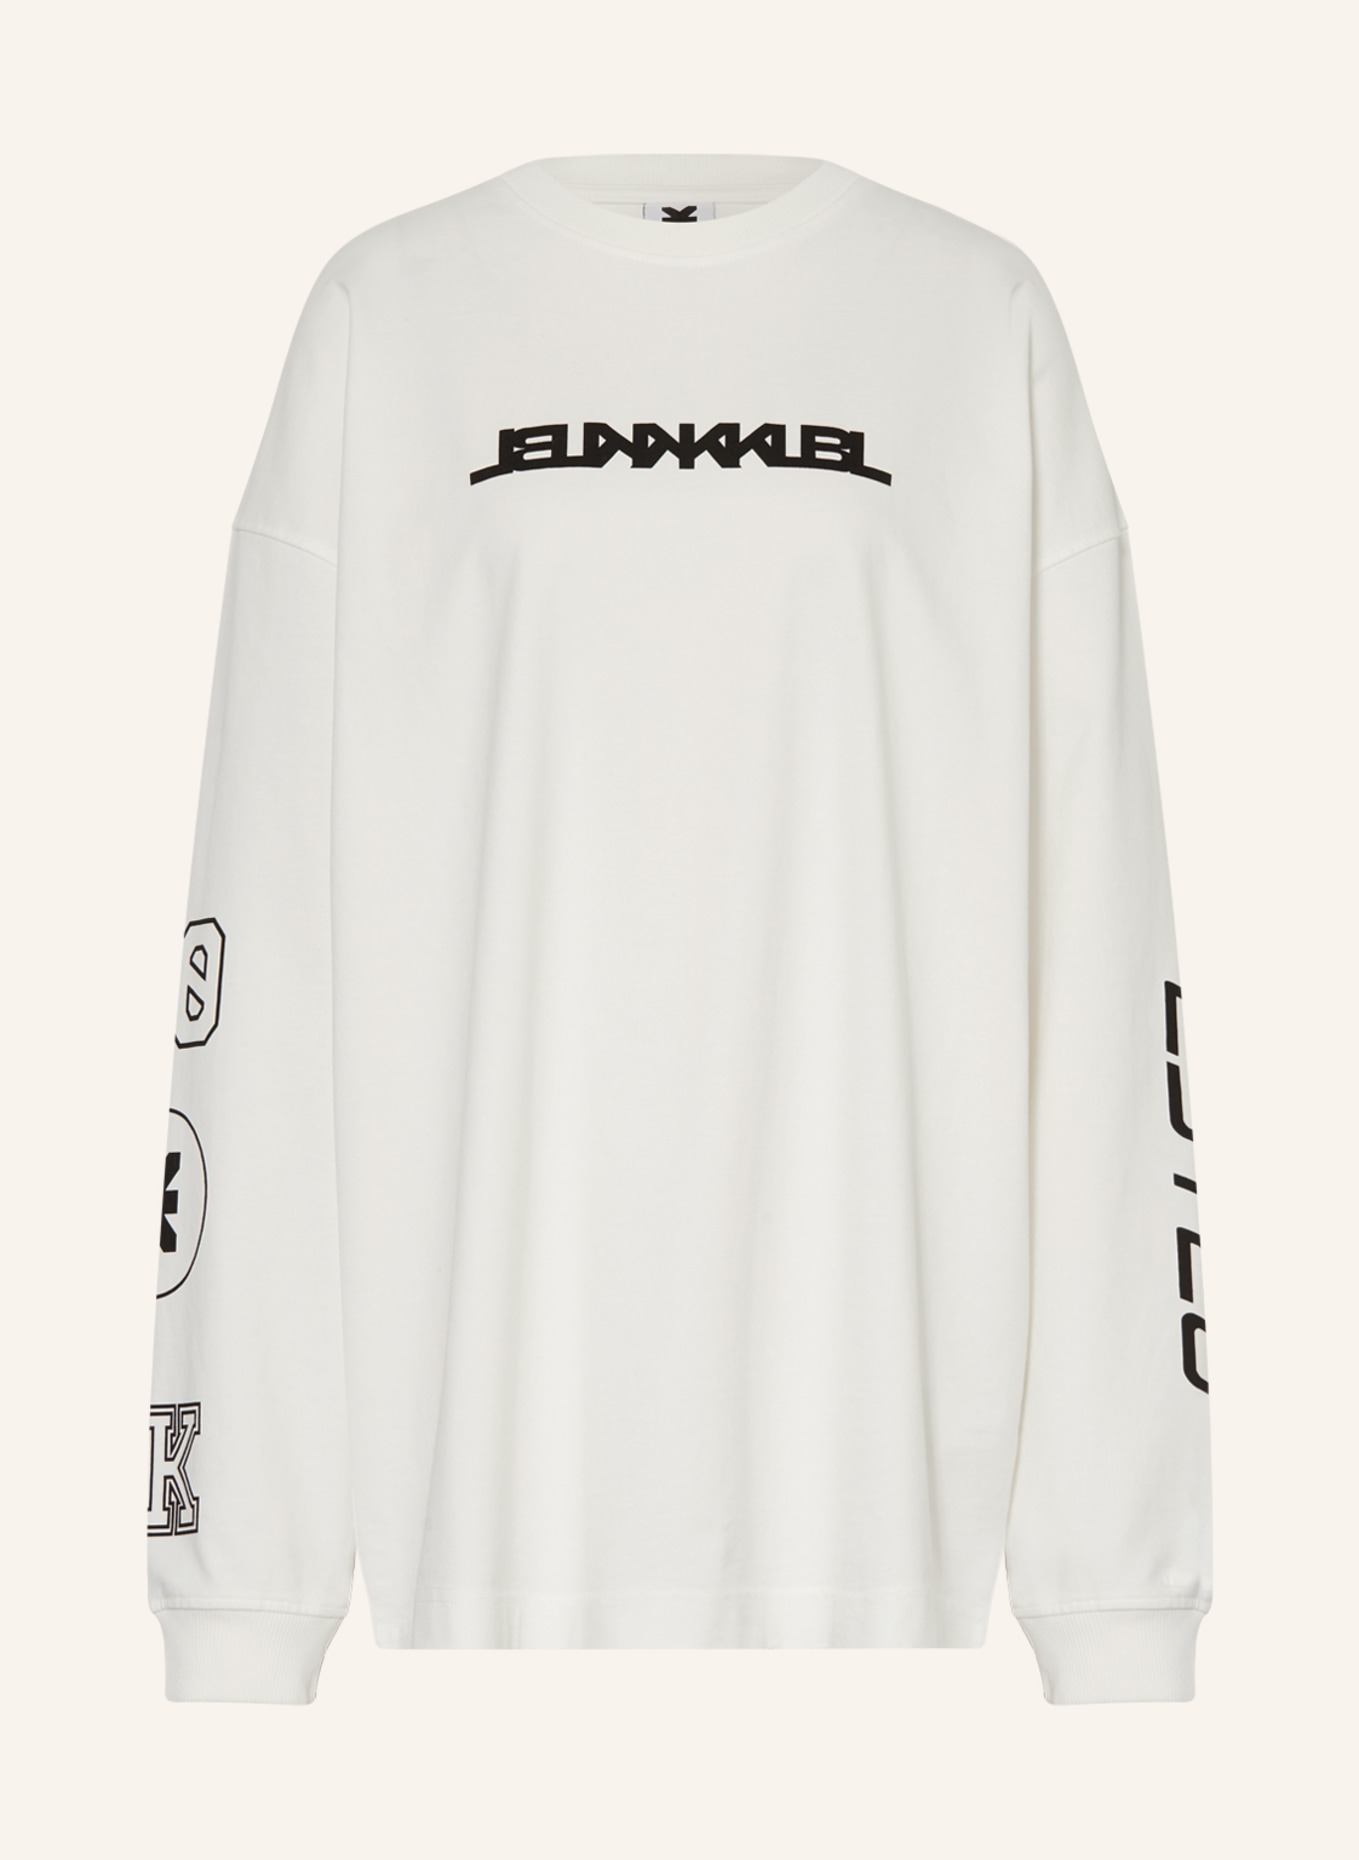 KARO KAUER Oversized sweatshirt, Color: WHITE (Image 1)